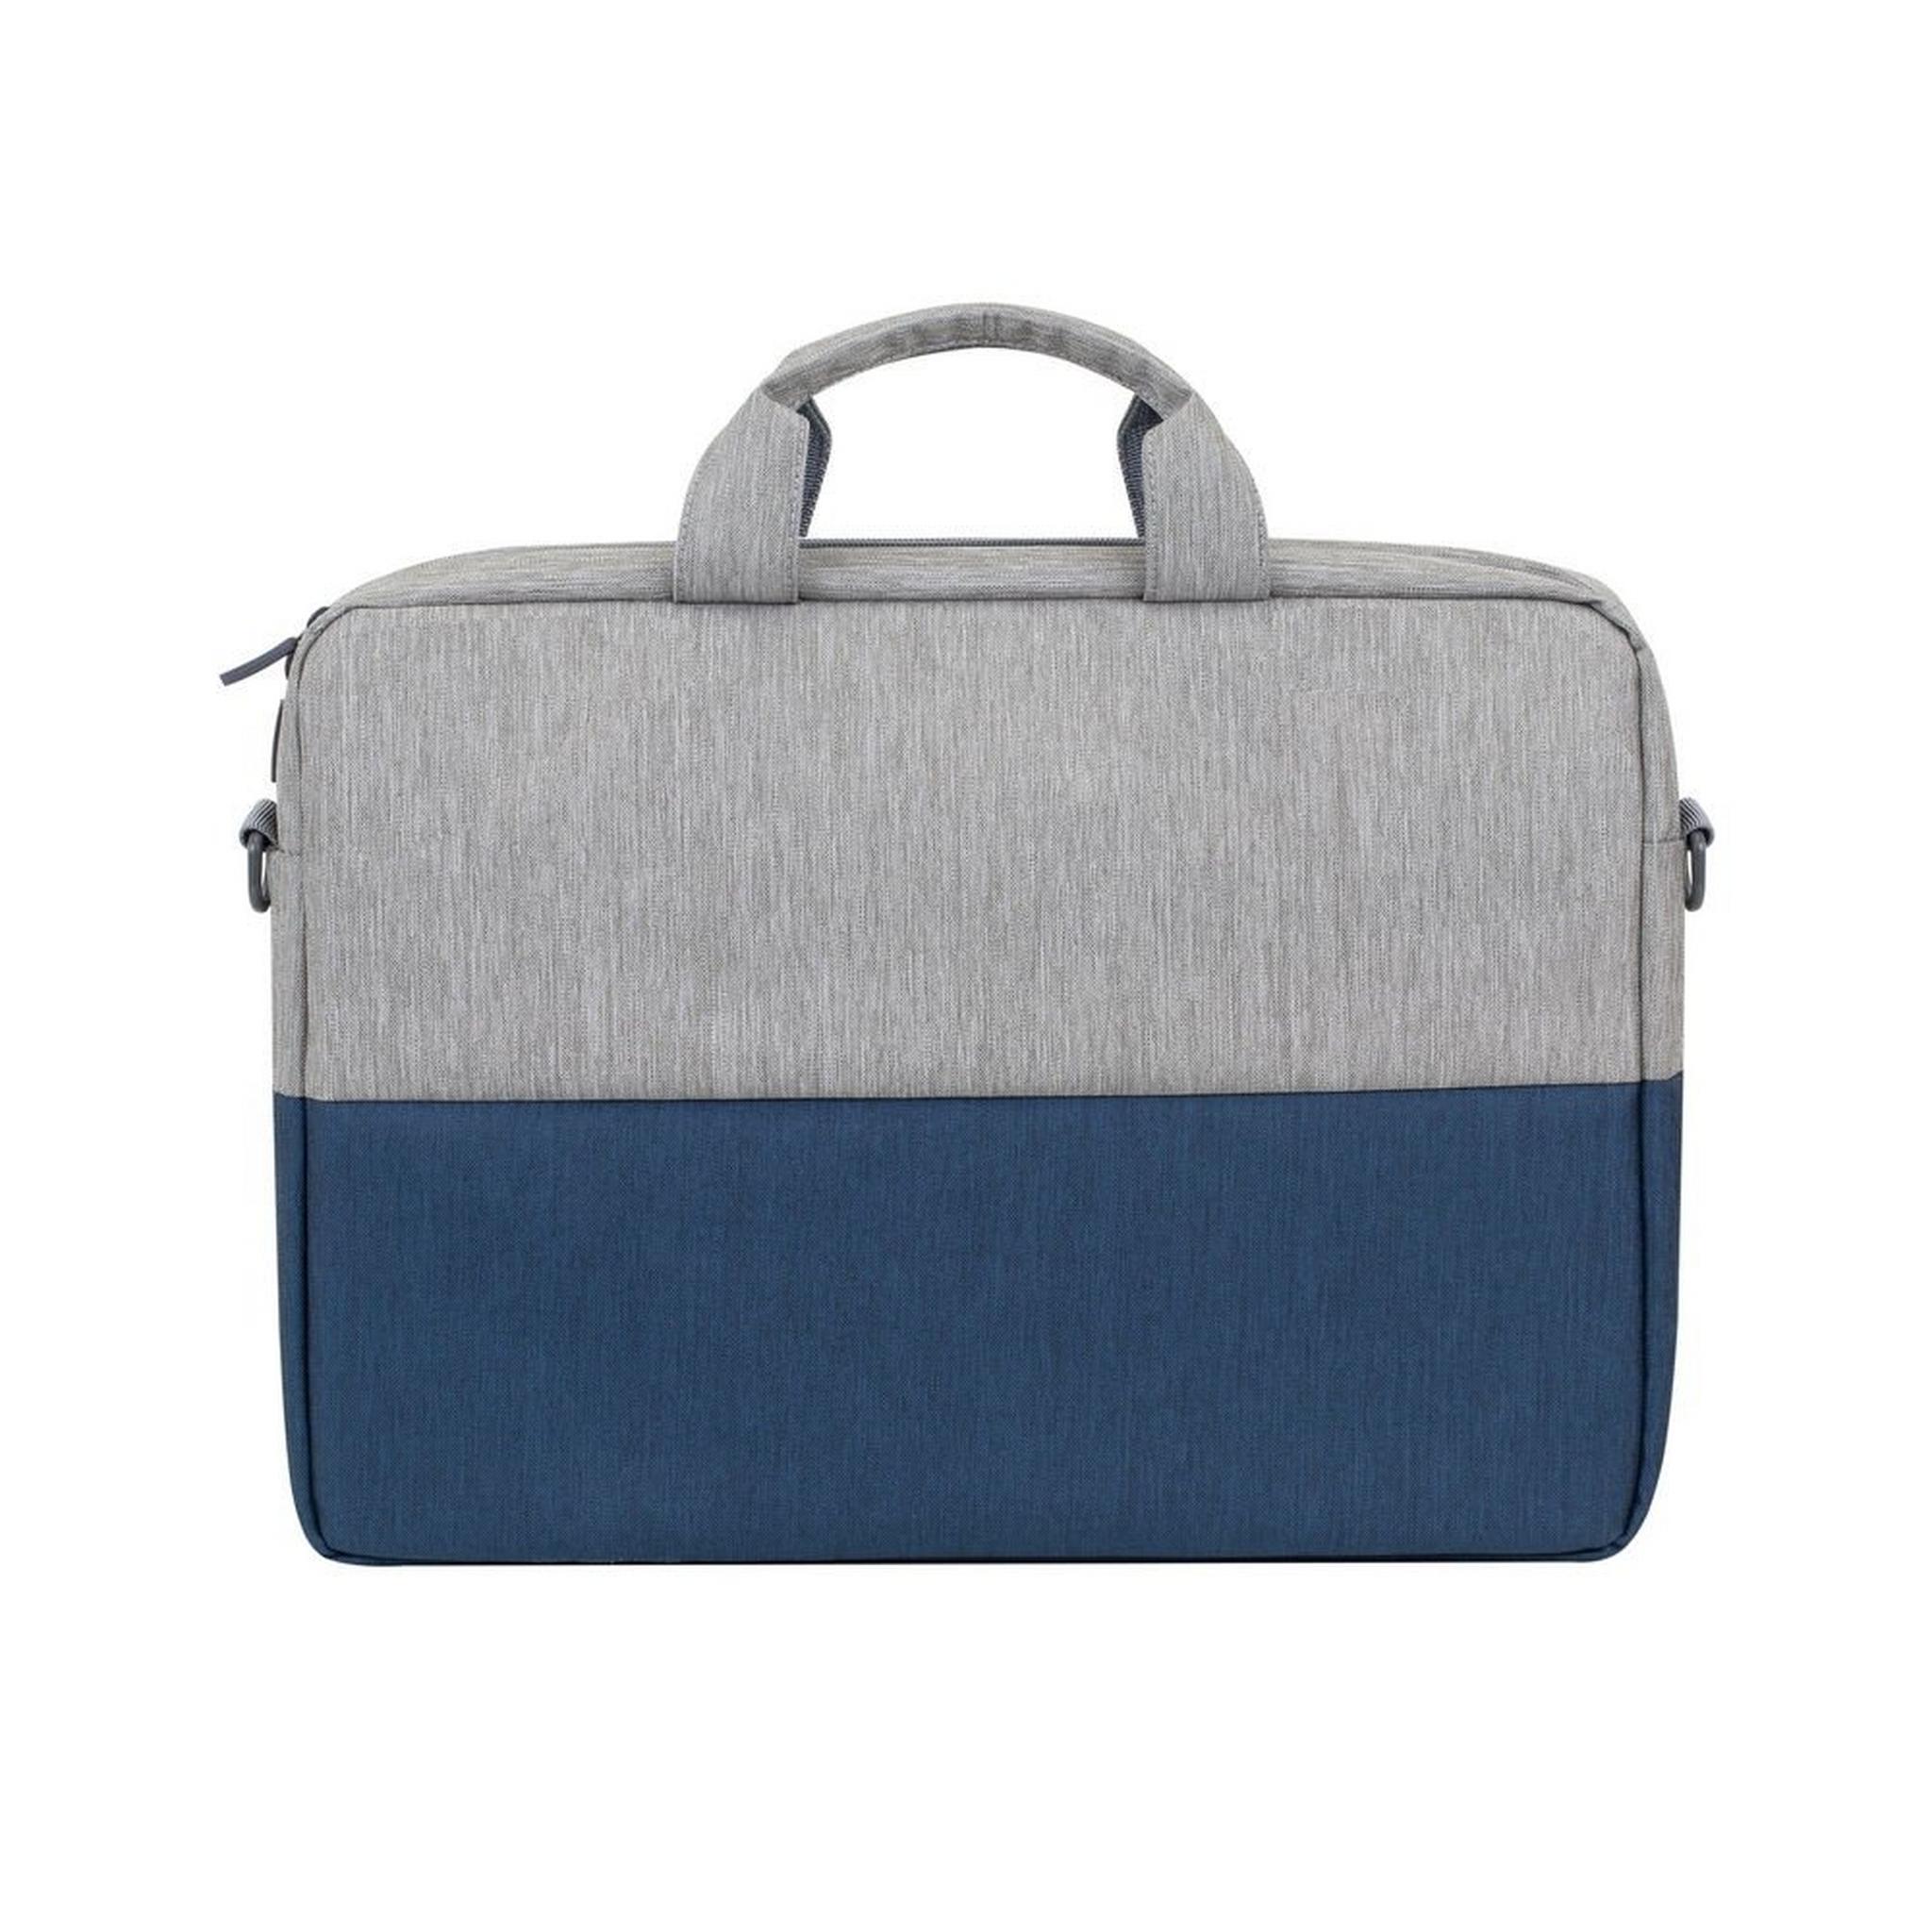 حقيبة اللابتوب بحجم 15.6 بوصة من ريفا - رمادي/أزرق داكن (7932)